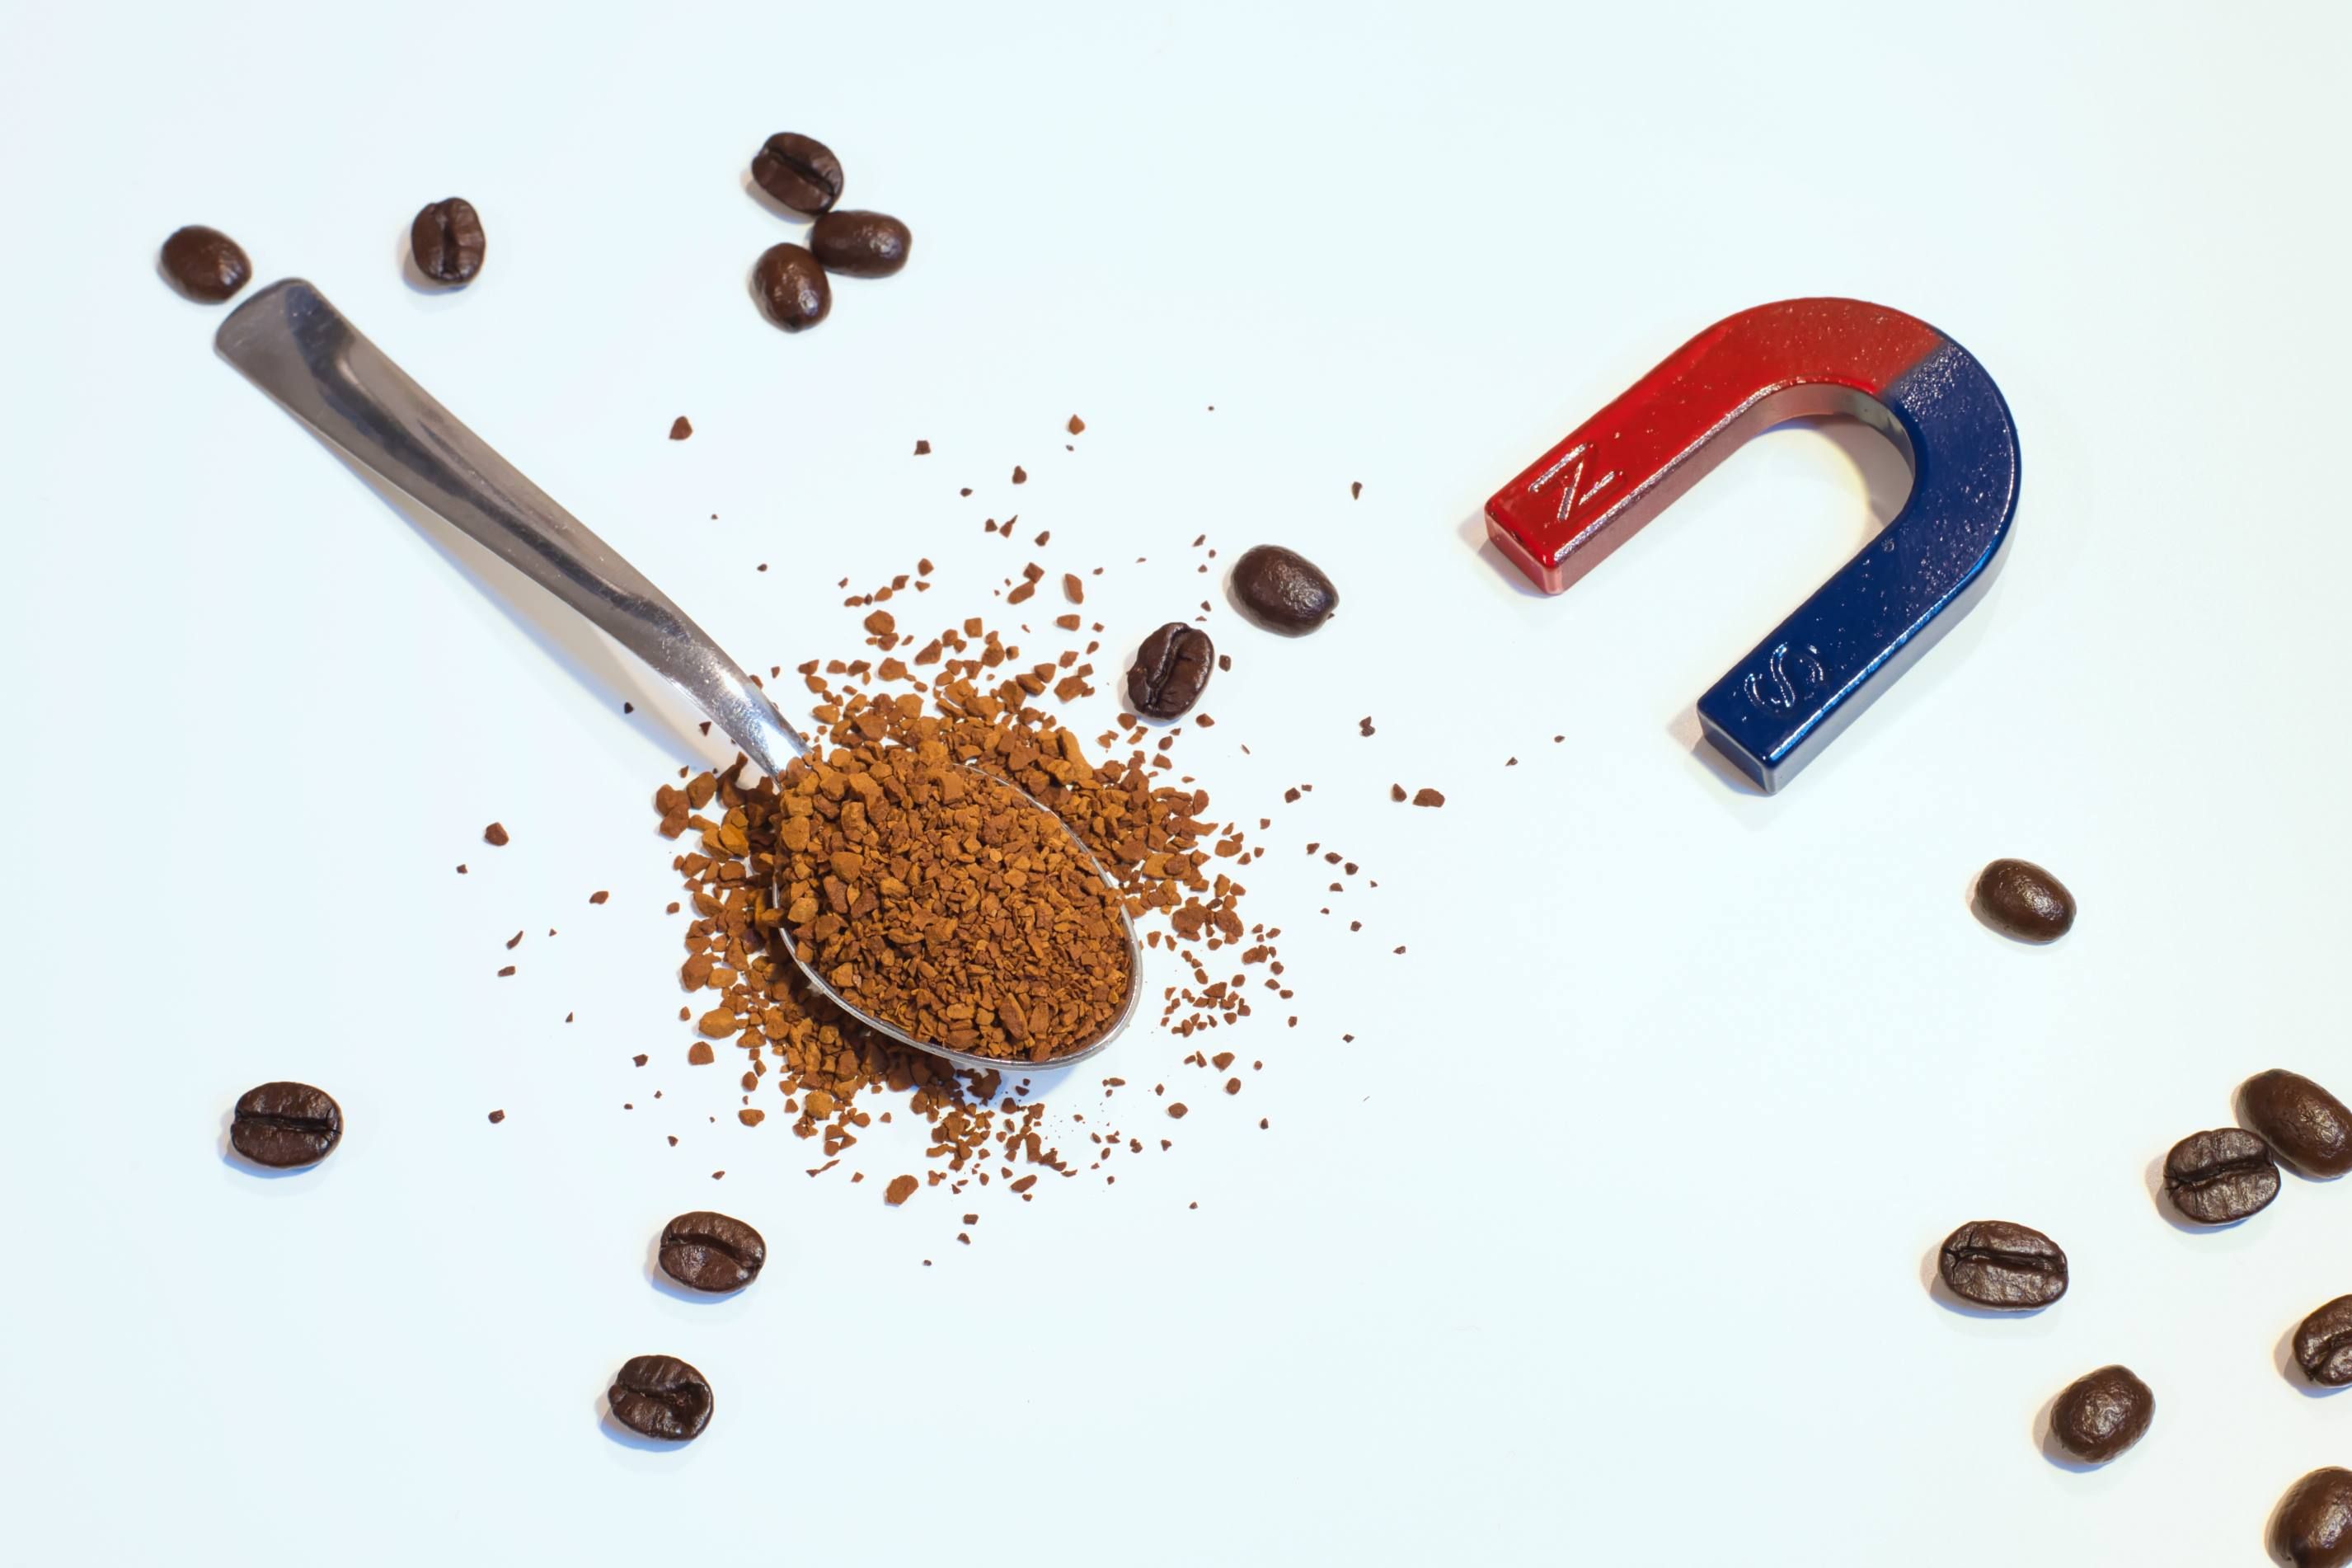 Zu sehen ist ein Teelöffel mit löslichem Kaffee in Granulatform, der von einigen ganzen Kaffeebohnen sowie einem hufeisenförmigen Magnet umgeben ist.